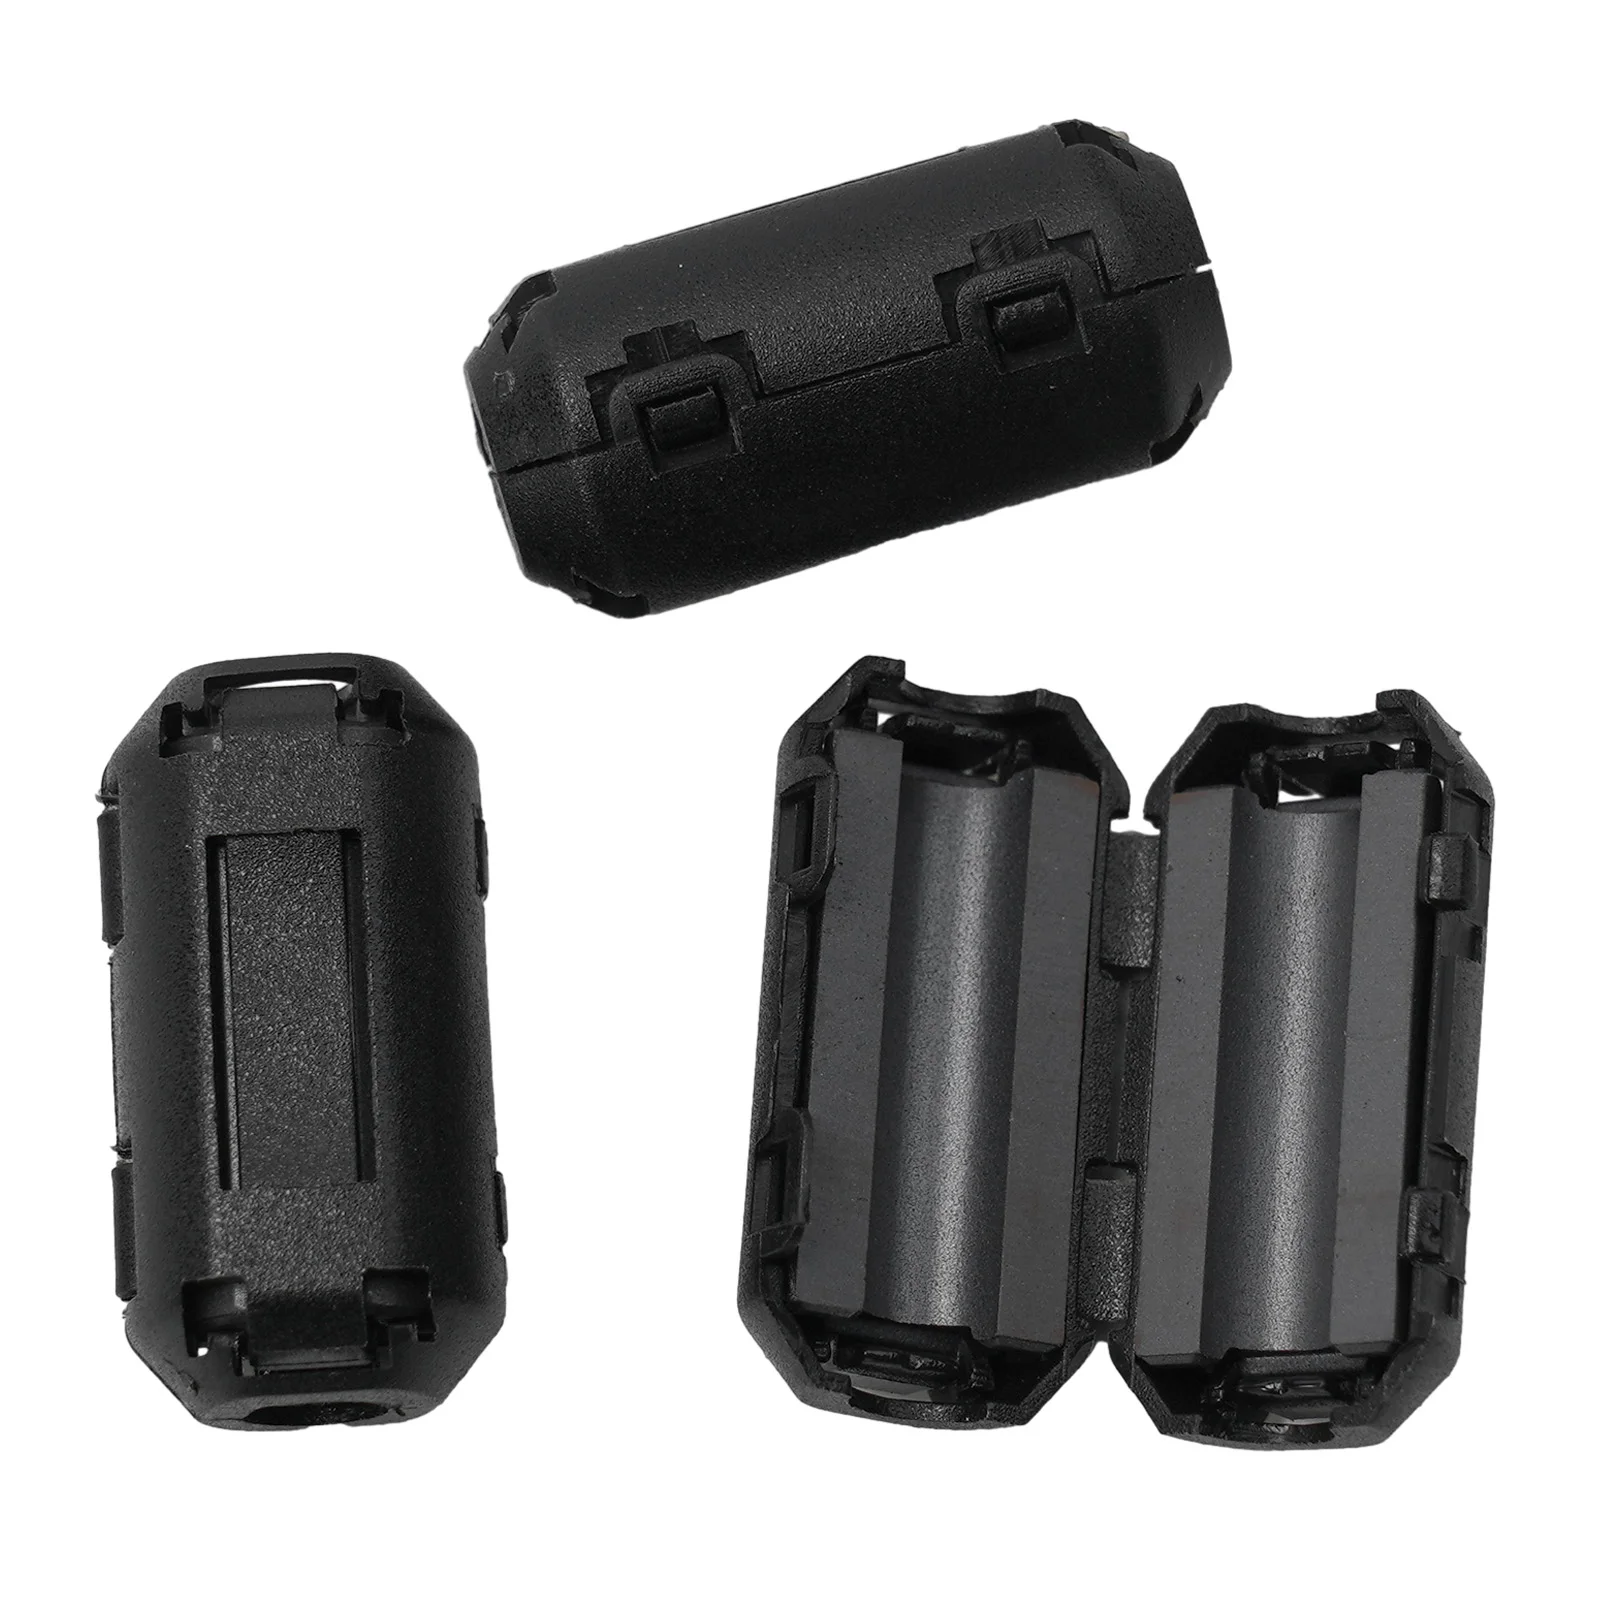 5 Stück Toroidkern Ferrit Rausch unterdrücker Filter ring Kabel clip 3,5-13mm Perle Choke Emi RFI Singal Anti-Jamming Rausch filter